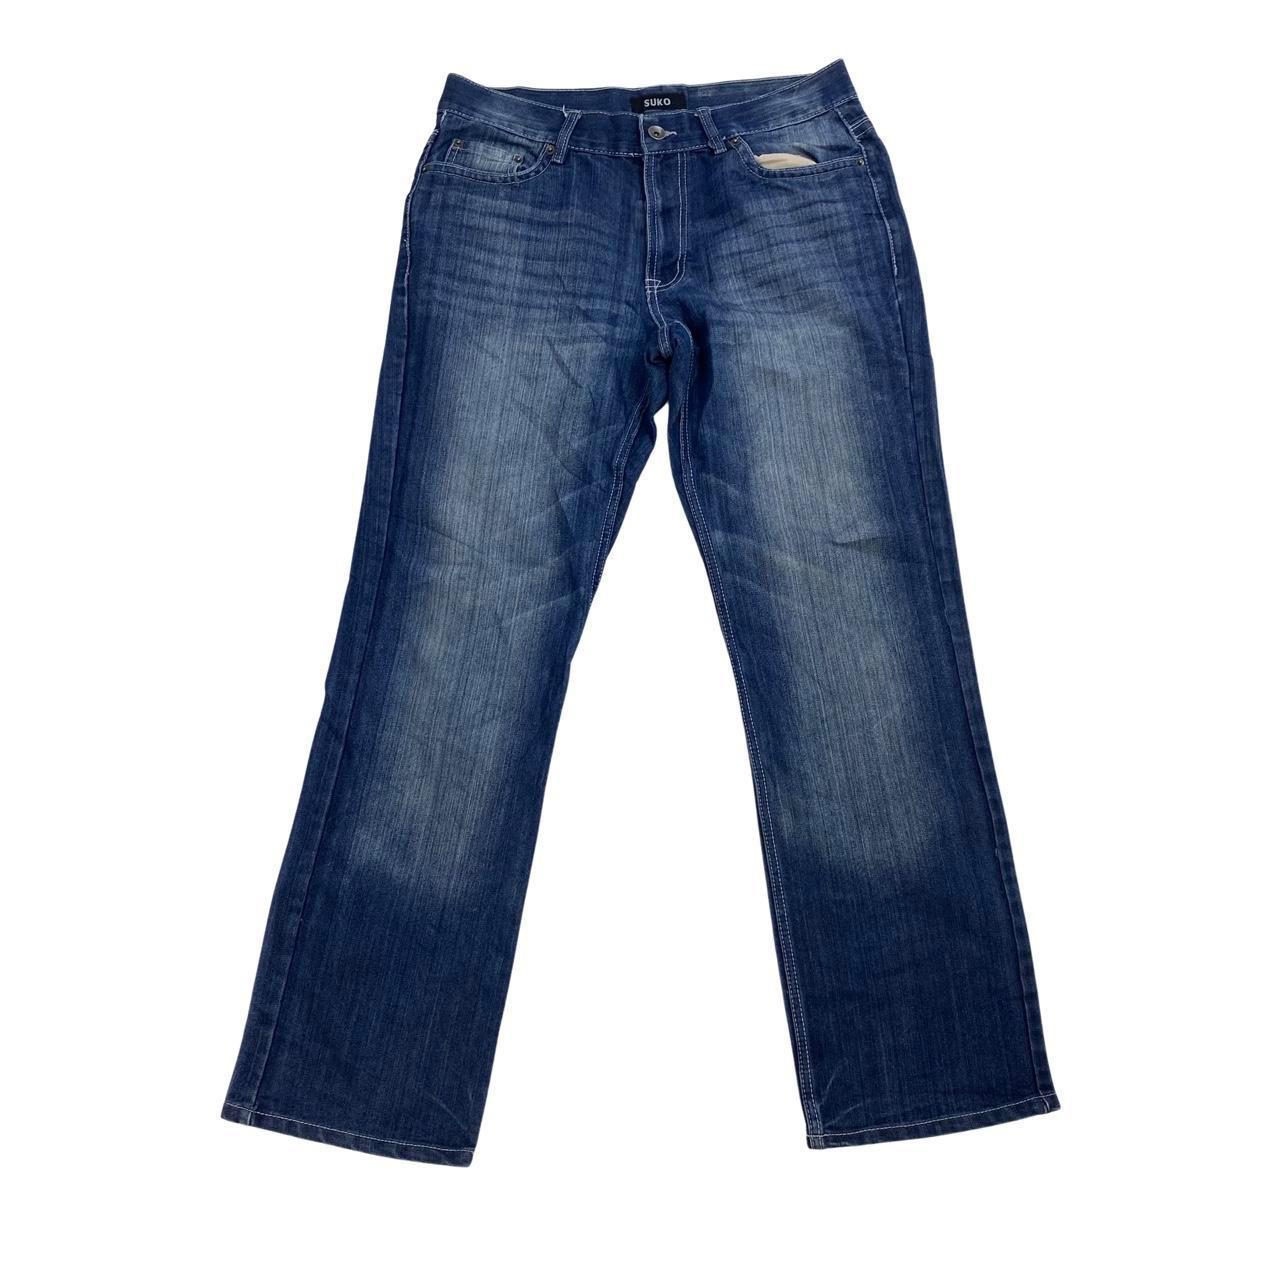 Suko Blue Jeans Size Mens 34W 32L CONDITION -... - Depop